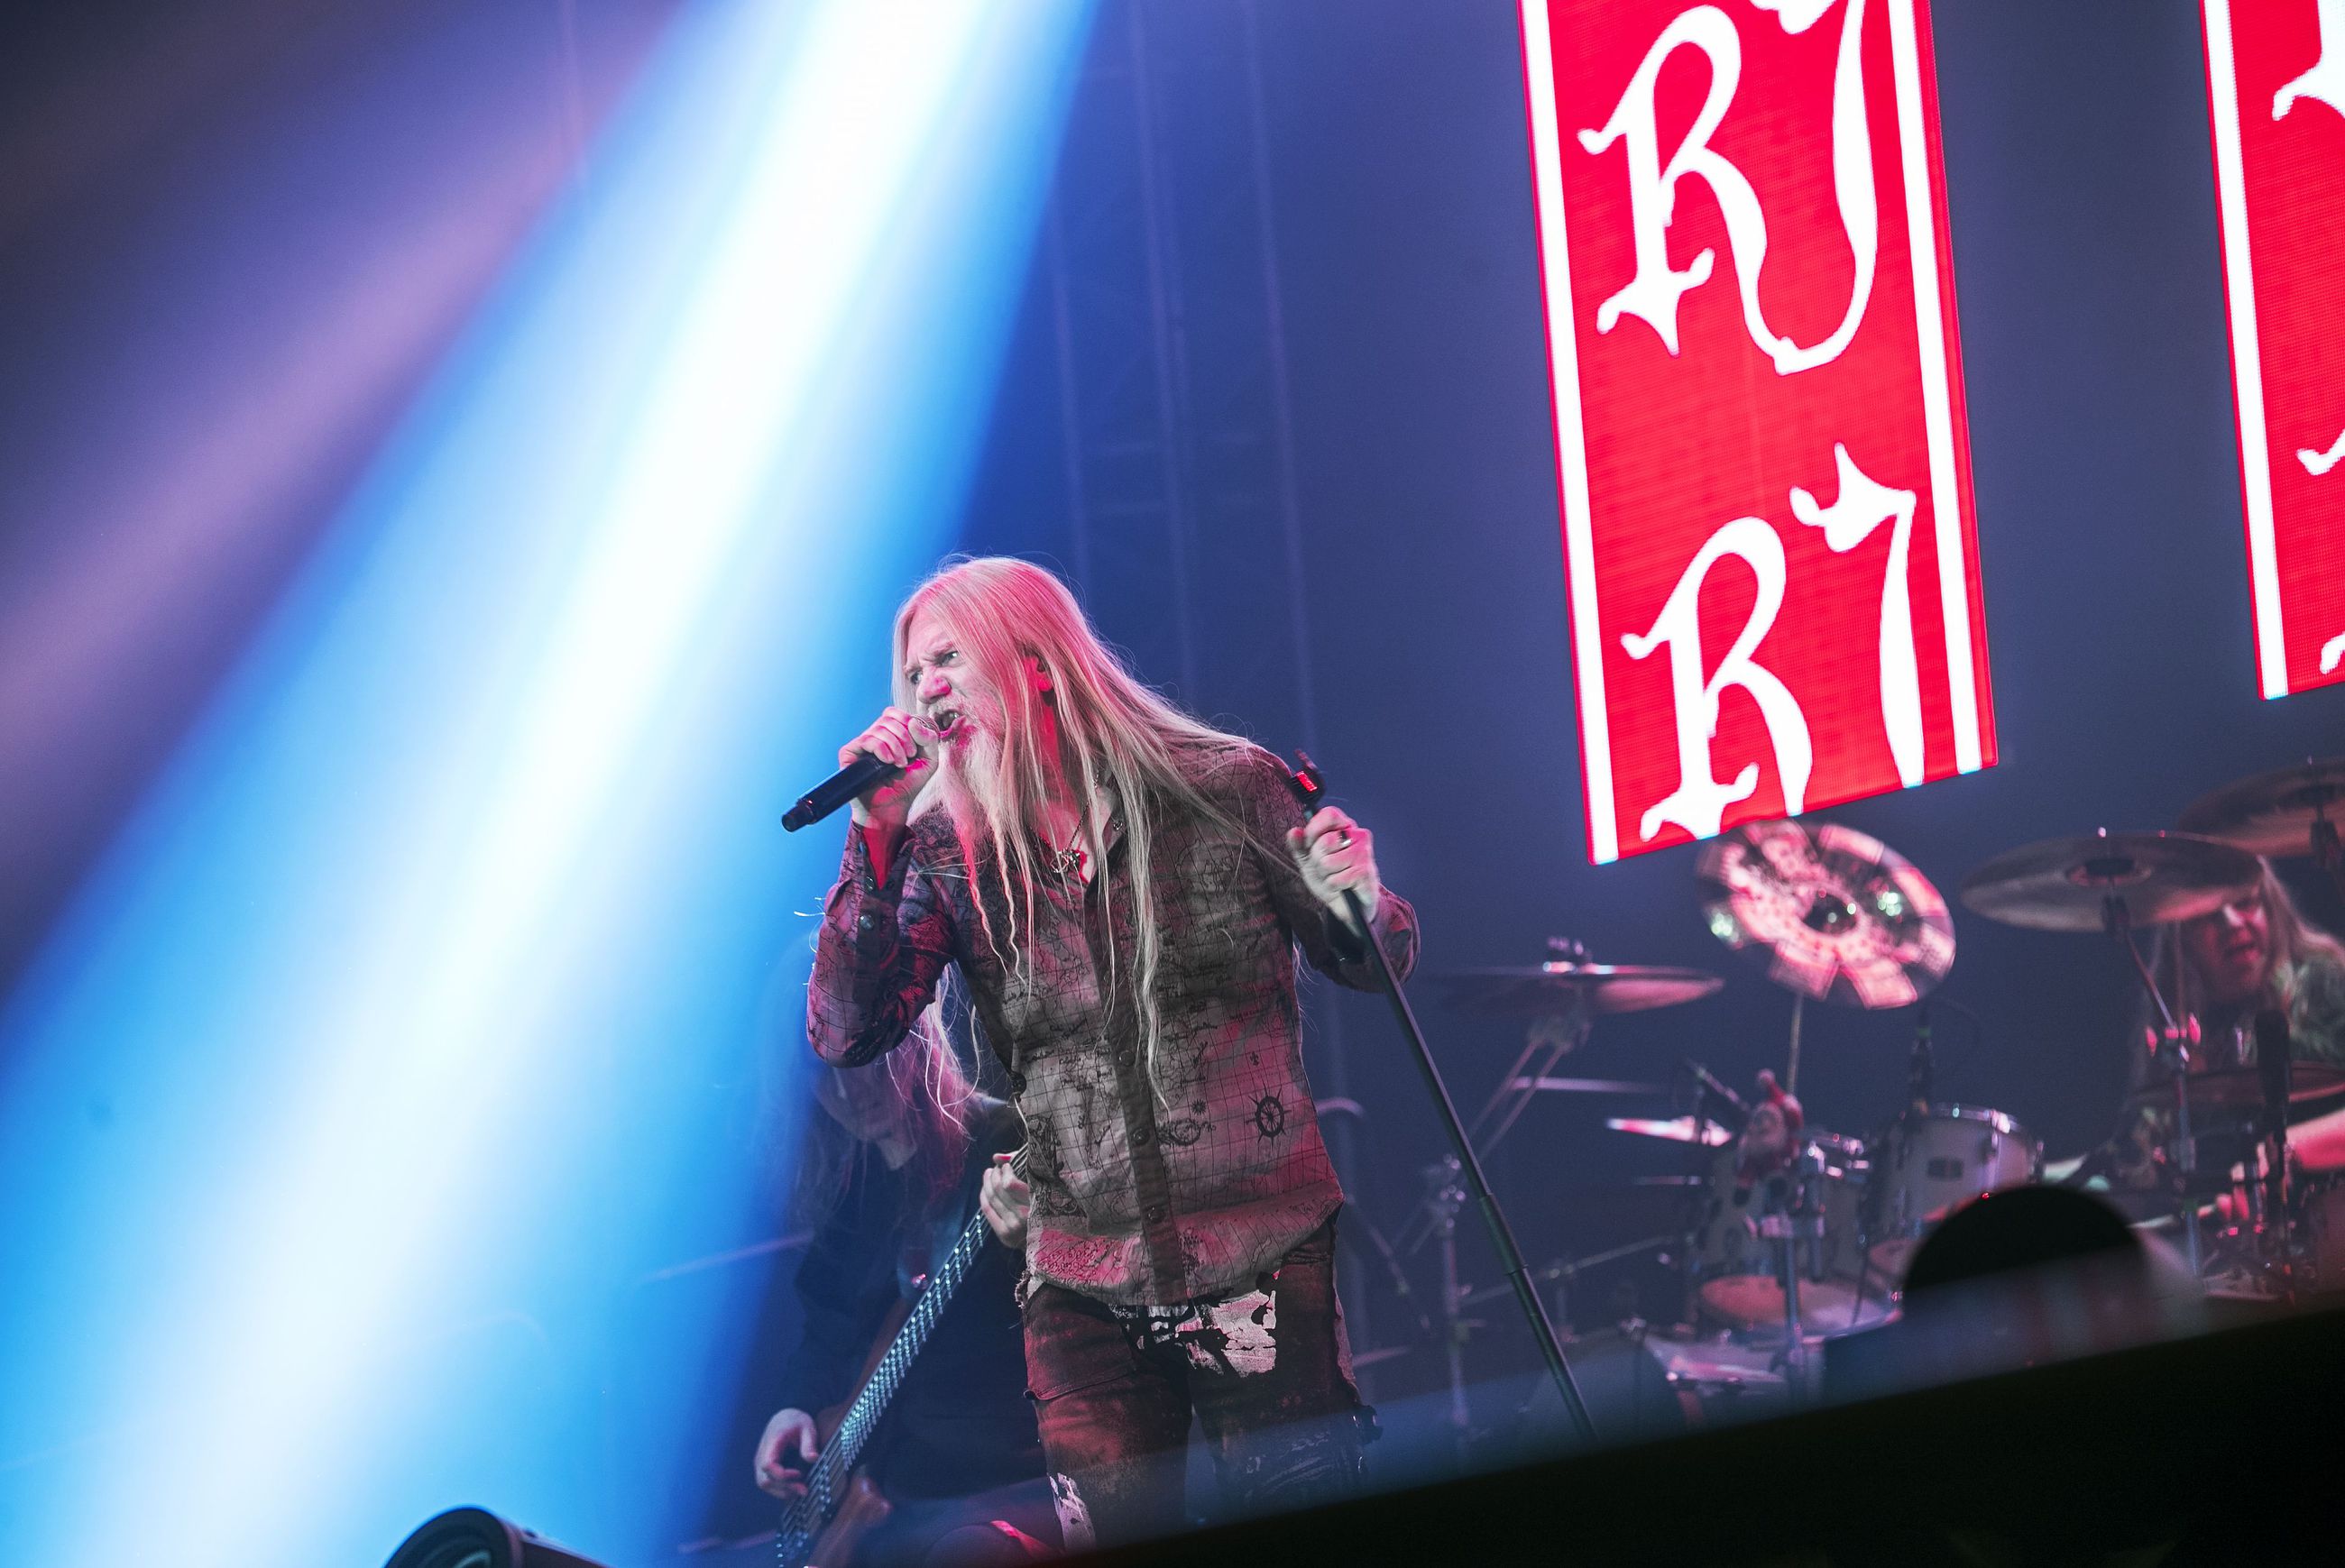 Ouluhallin Raskasta joulua -konsertti järjestetään konserttijärjestäjä RH Entertainmentin konkurssista huolimatta. Kuva laulaja Marko Hietala vuoden 2017 kiertueen konsertissa.